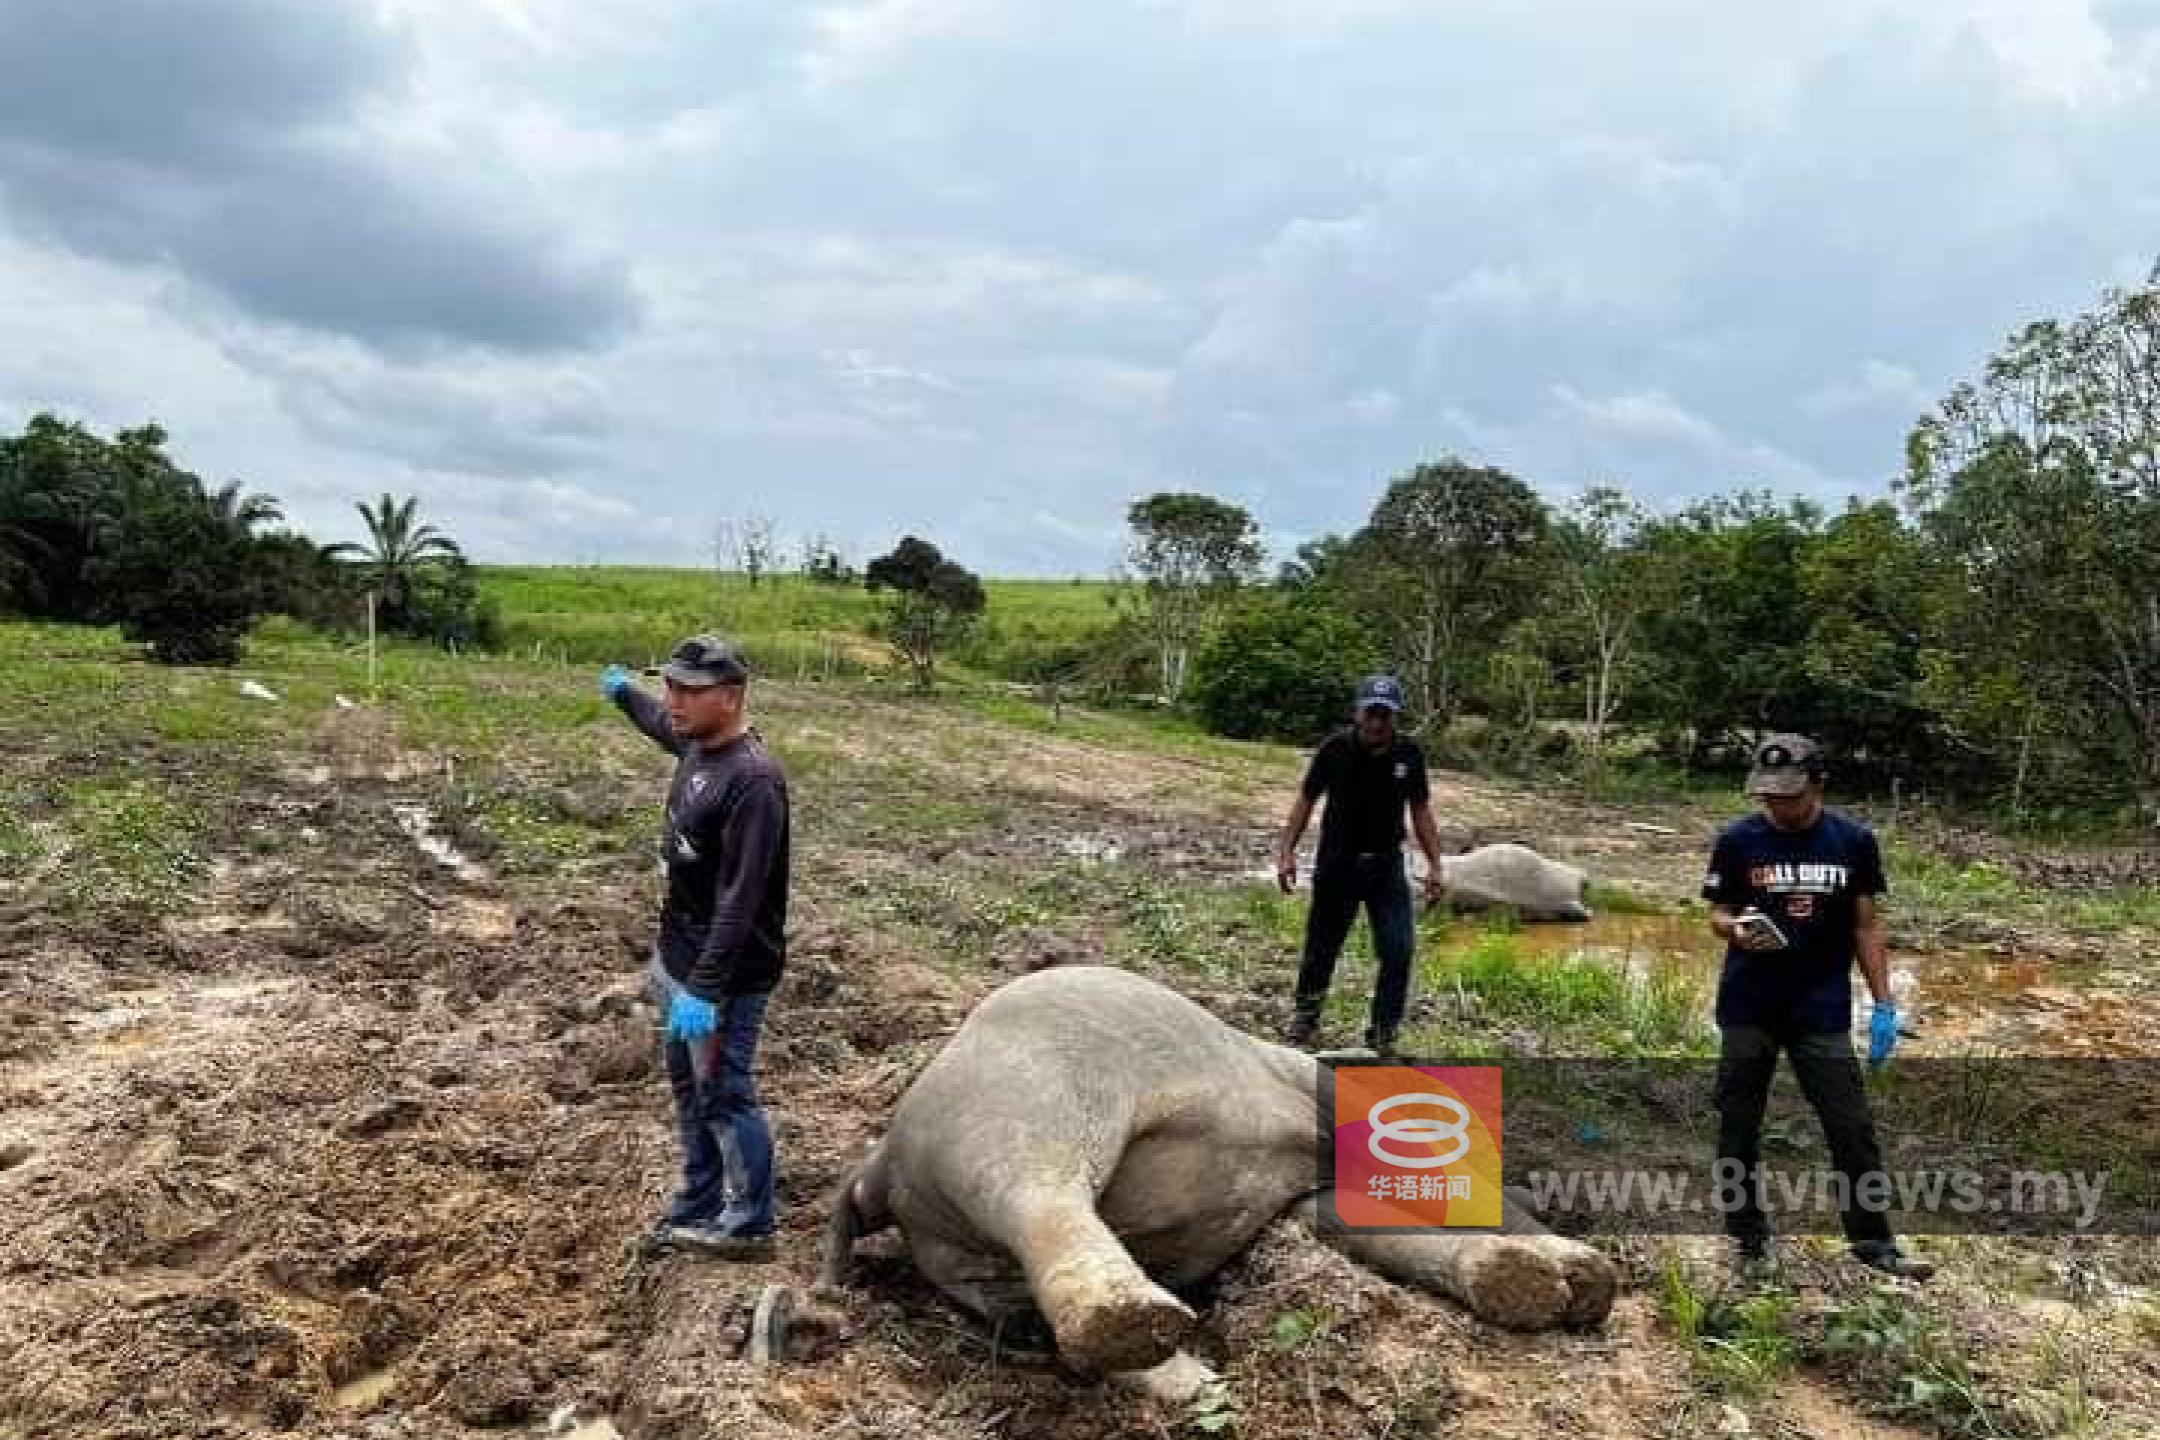 柔4象遭毒死引关注 动保组织促停森林开发